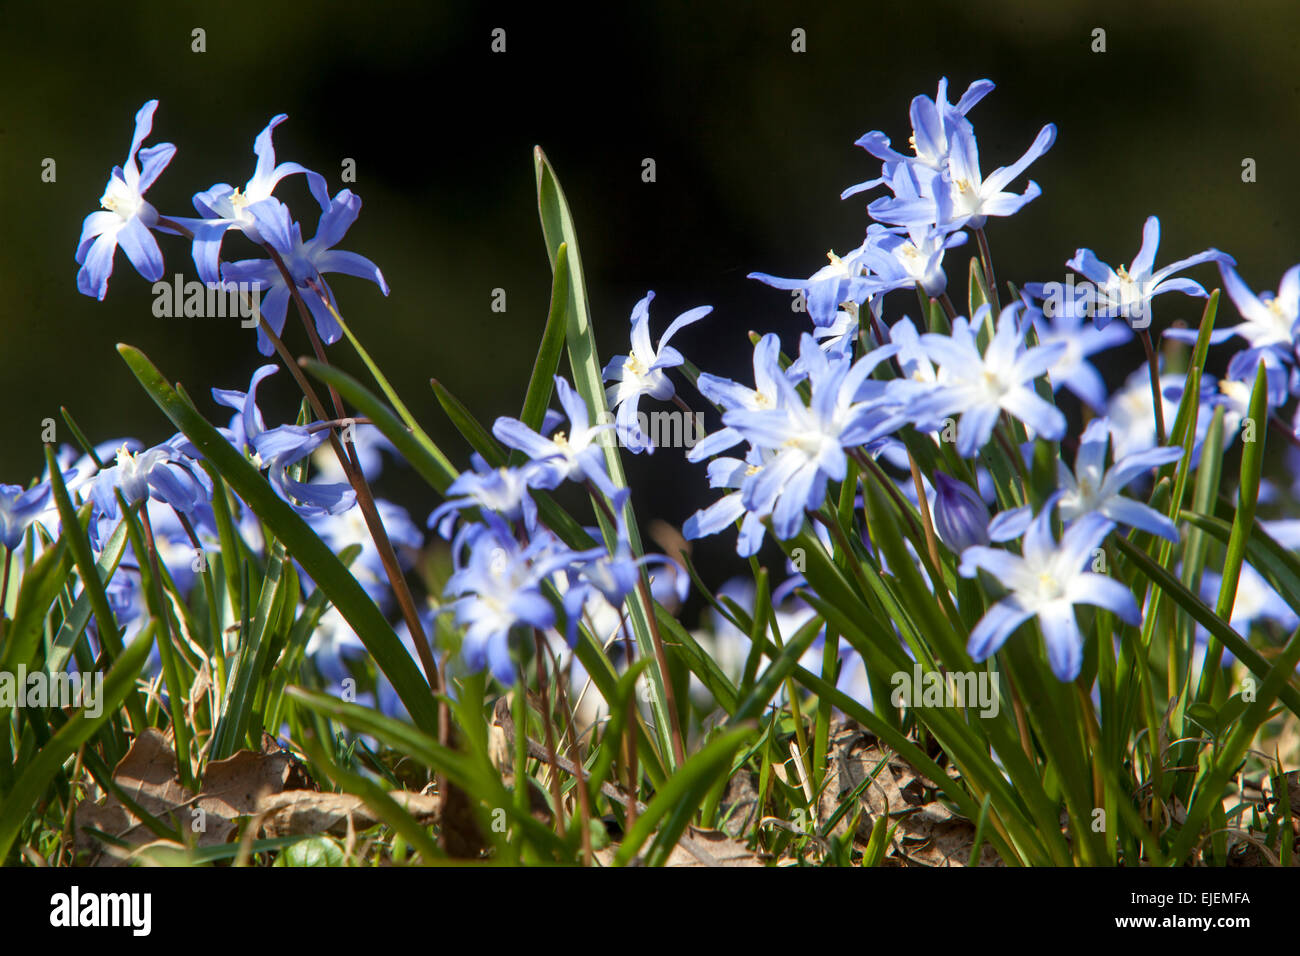 Gloire de la neige, Scilla luciliae, Chionodoxa luciliae, fleurs du jardin du début du printemps Banque D'Images